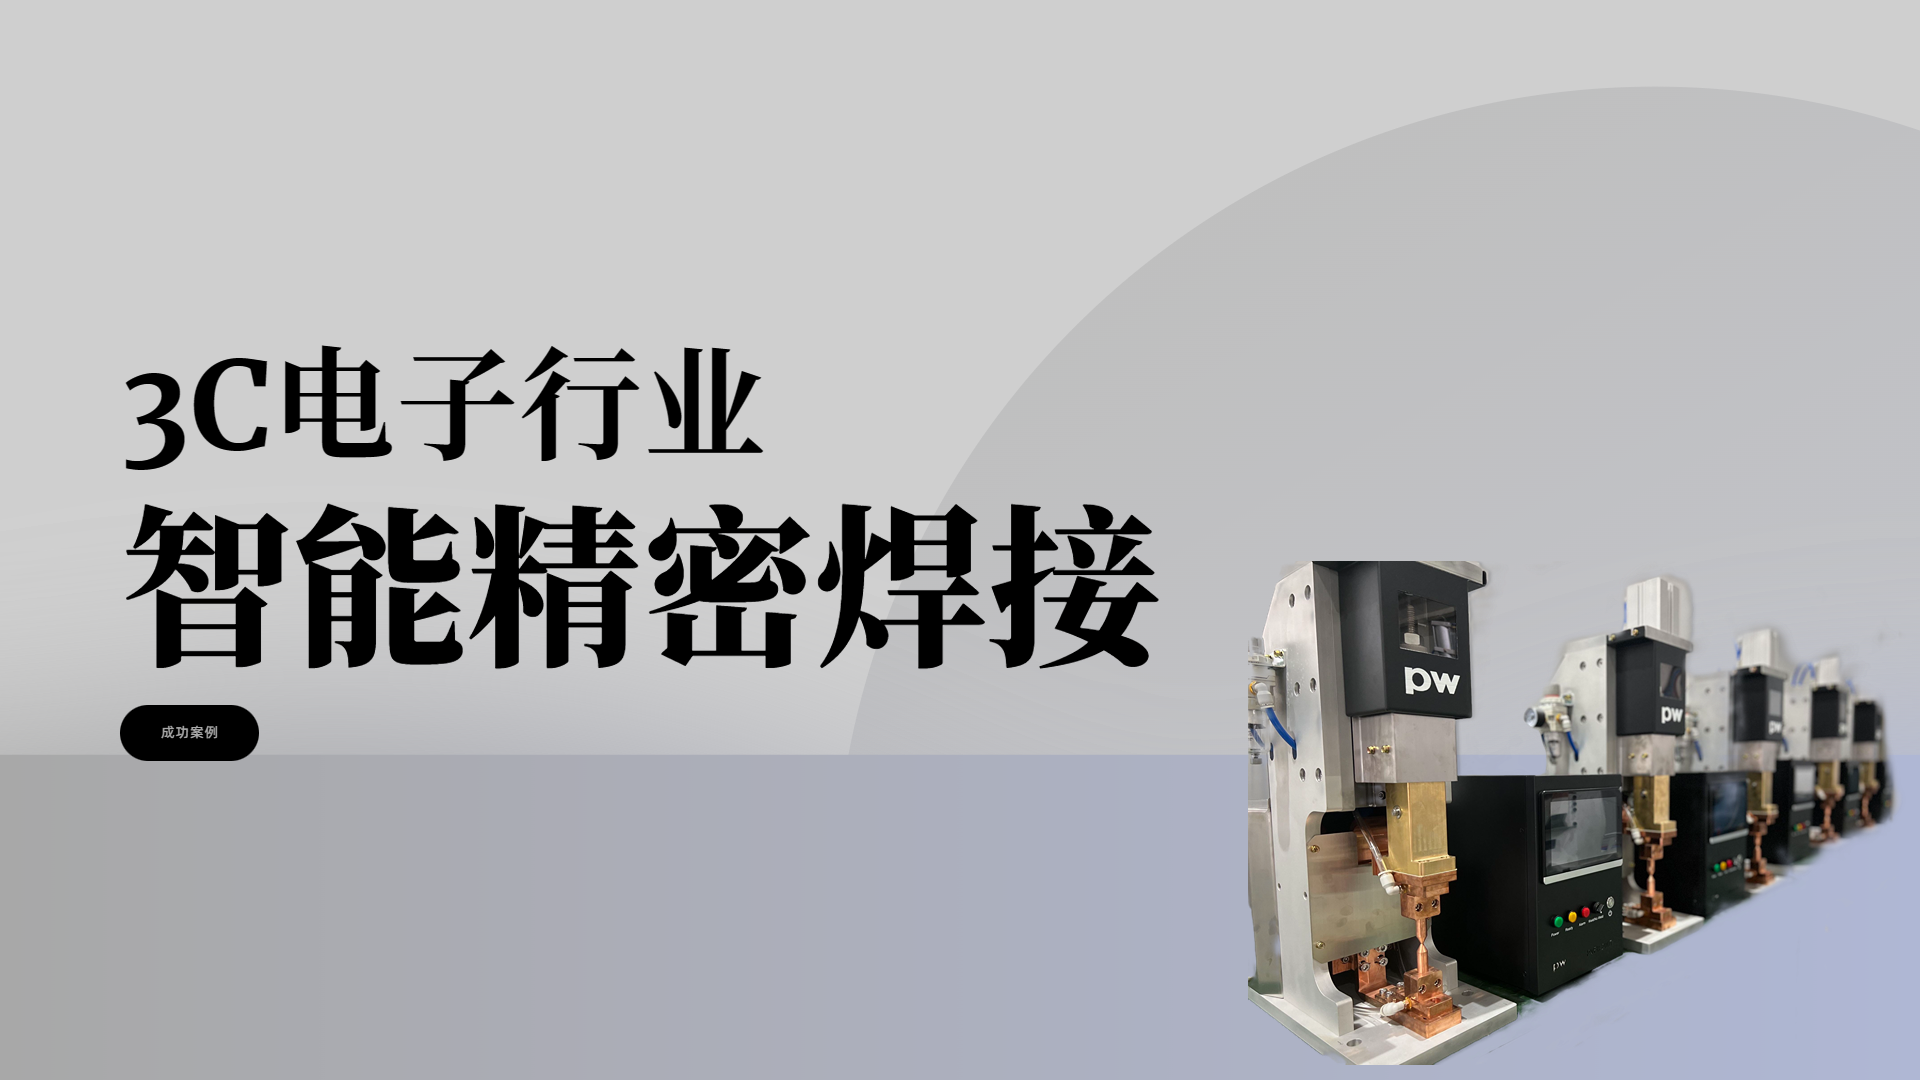 天津商科数控技术股份有限公司，汽车车身连接，精密焊接-电子电工